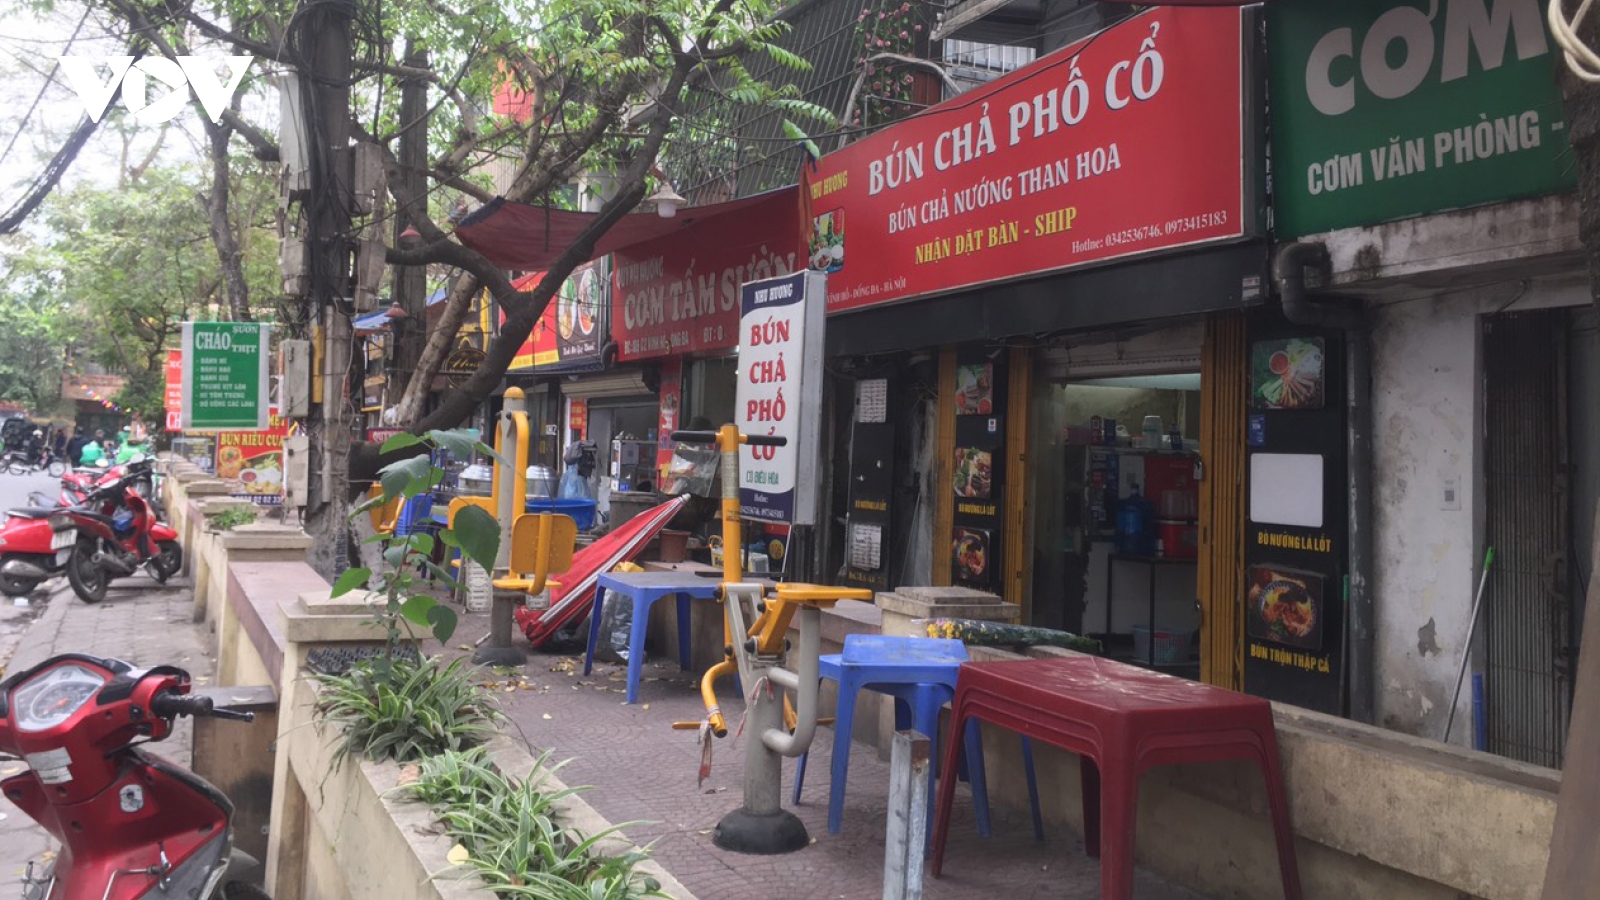 Sân chơi khu tập thể ở Hà Nội thành nơi bán hàng, tập kết hàng hóa